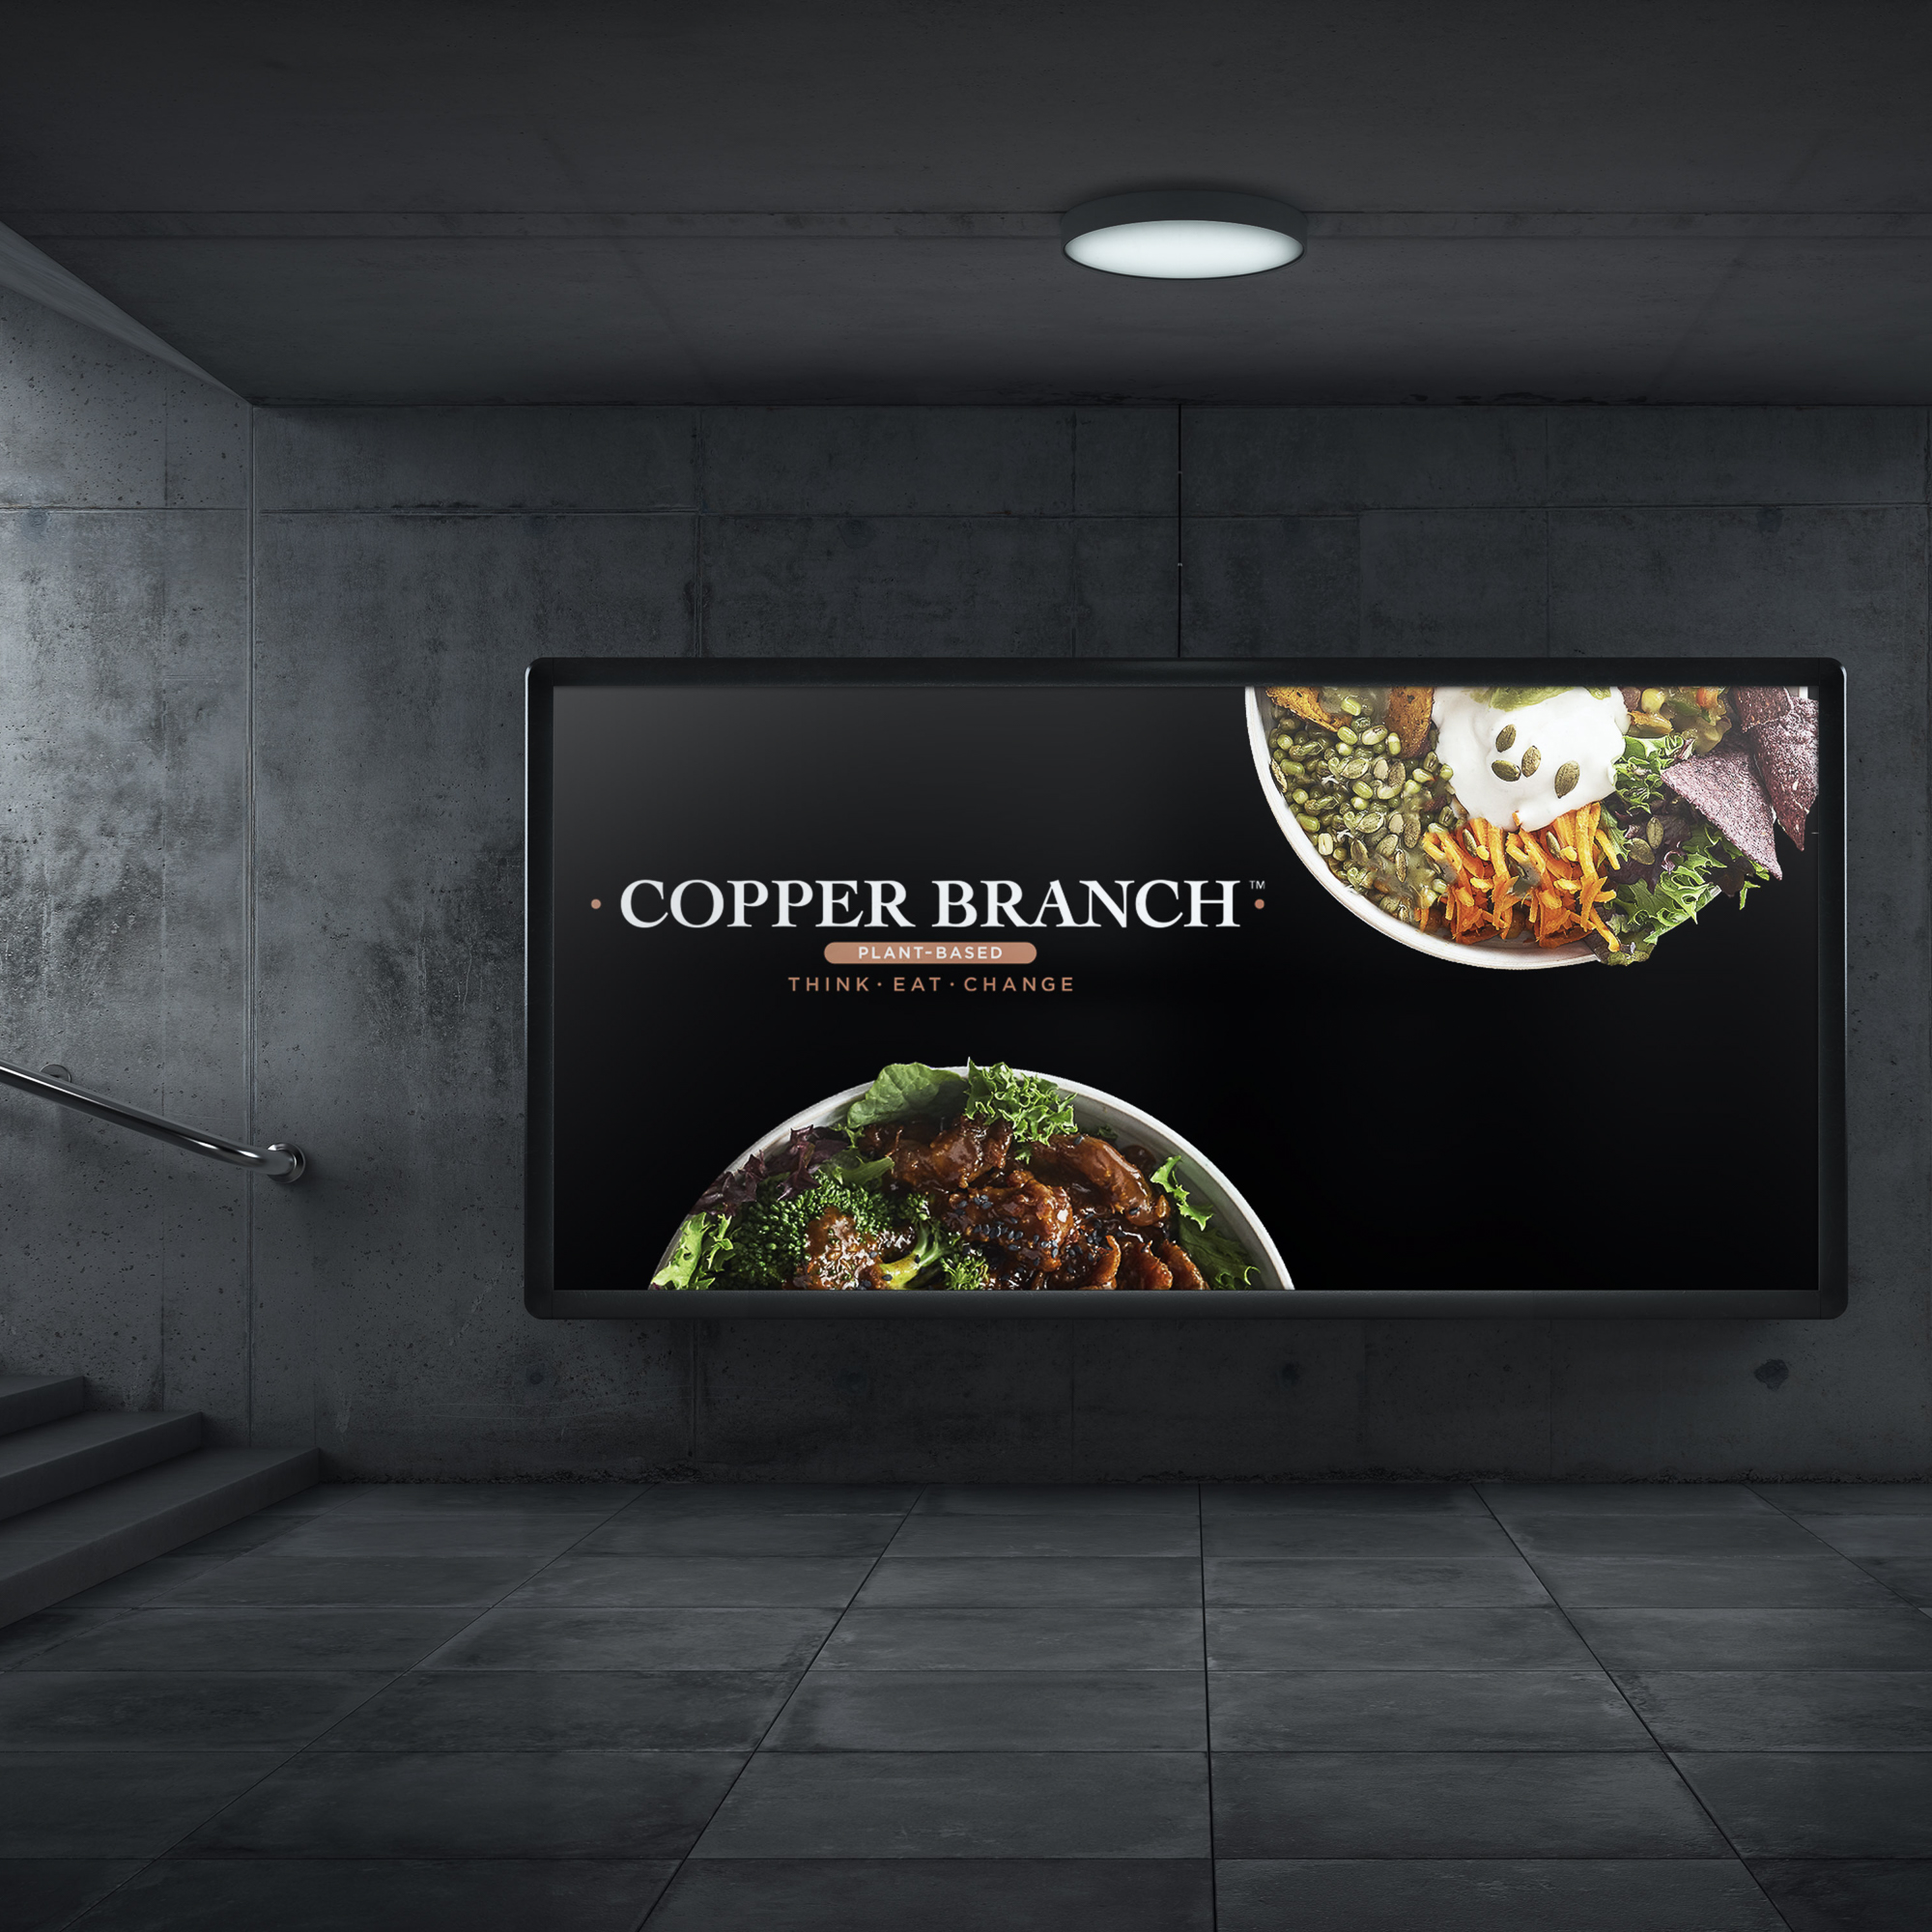 Panneaux publicitaire du restaurant Copper Branch.